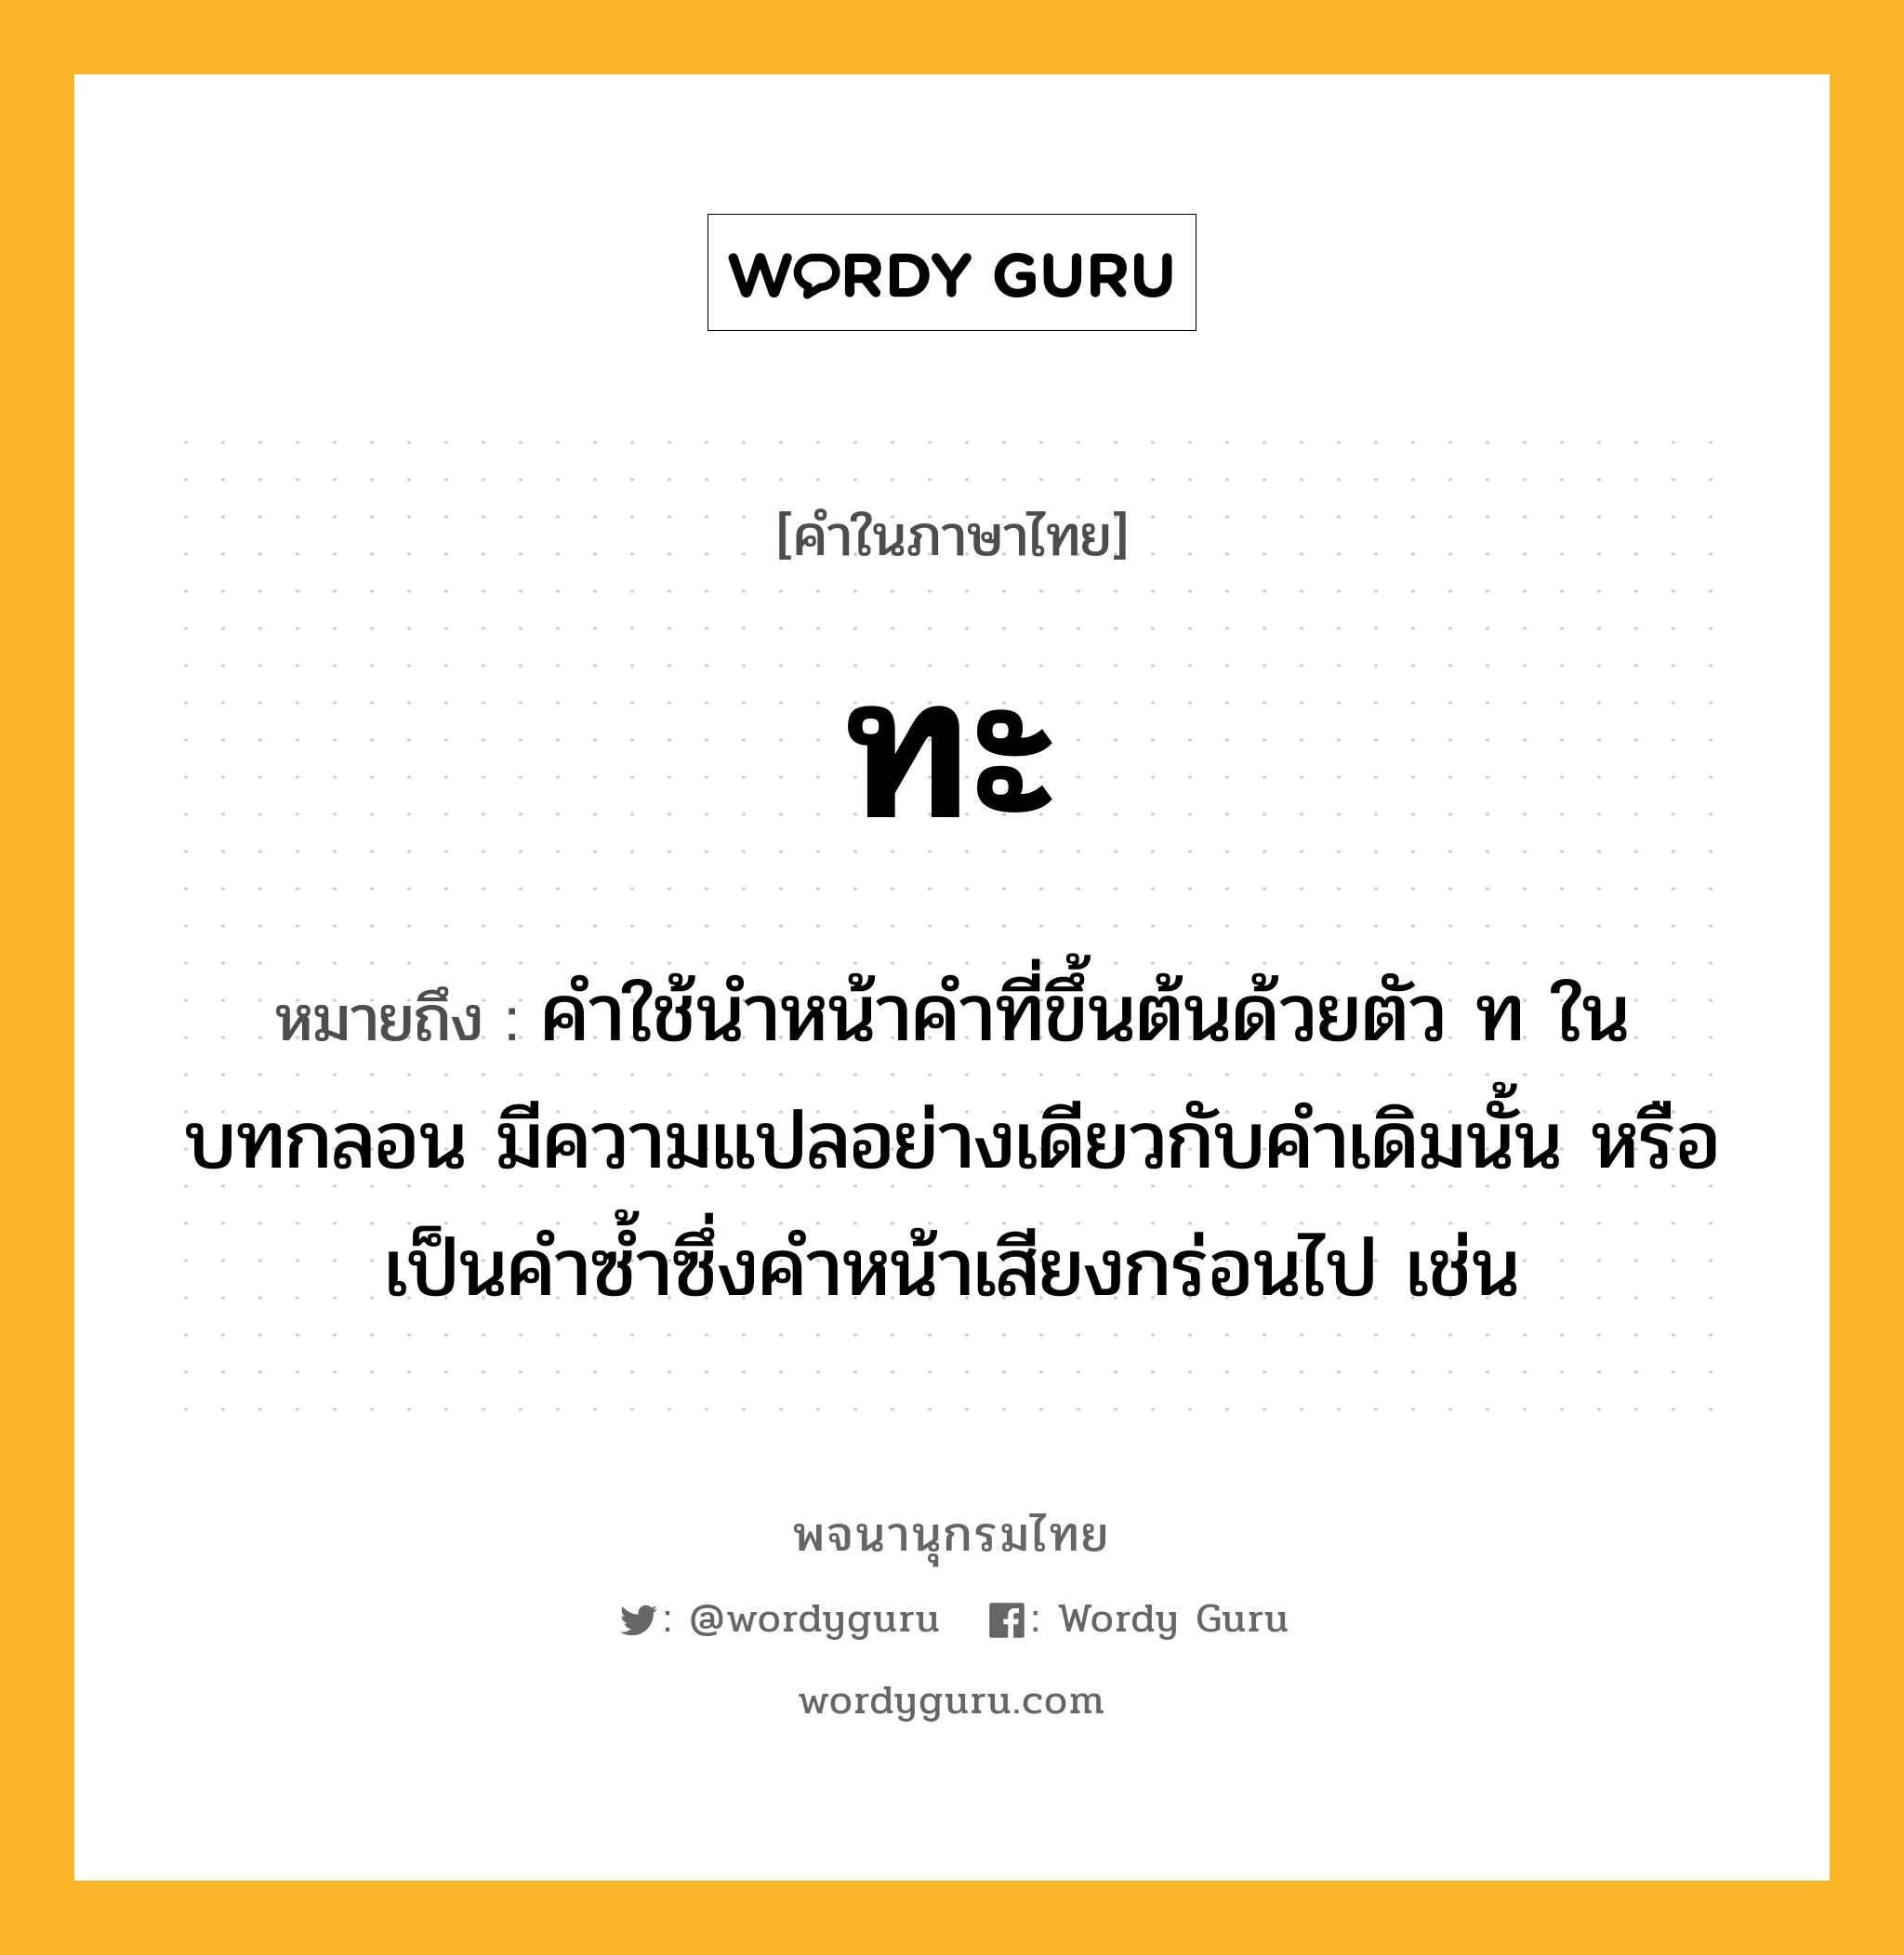 ทะ ความหมาย หมายถึงอะไร?, คำในภาษาไทย ทะ หมายถึง คําใช้นําหน้าคําที่ขึ้นต้นด้วยตัว ท ในบทกลอน มีความแปลอย่างเดียวกับคําเดิมนั้น หรือเป็นคําซํ้าซึ่งคําหน้าเสียงกร่อนไป เช่น